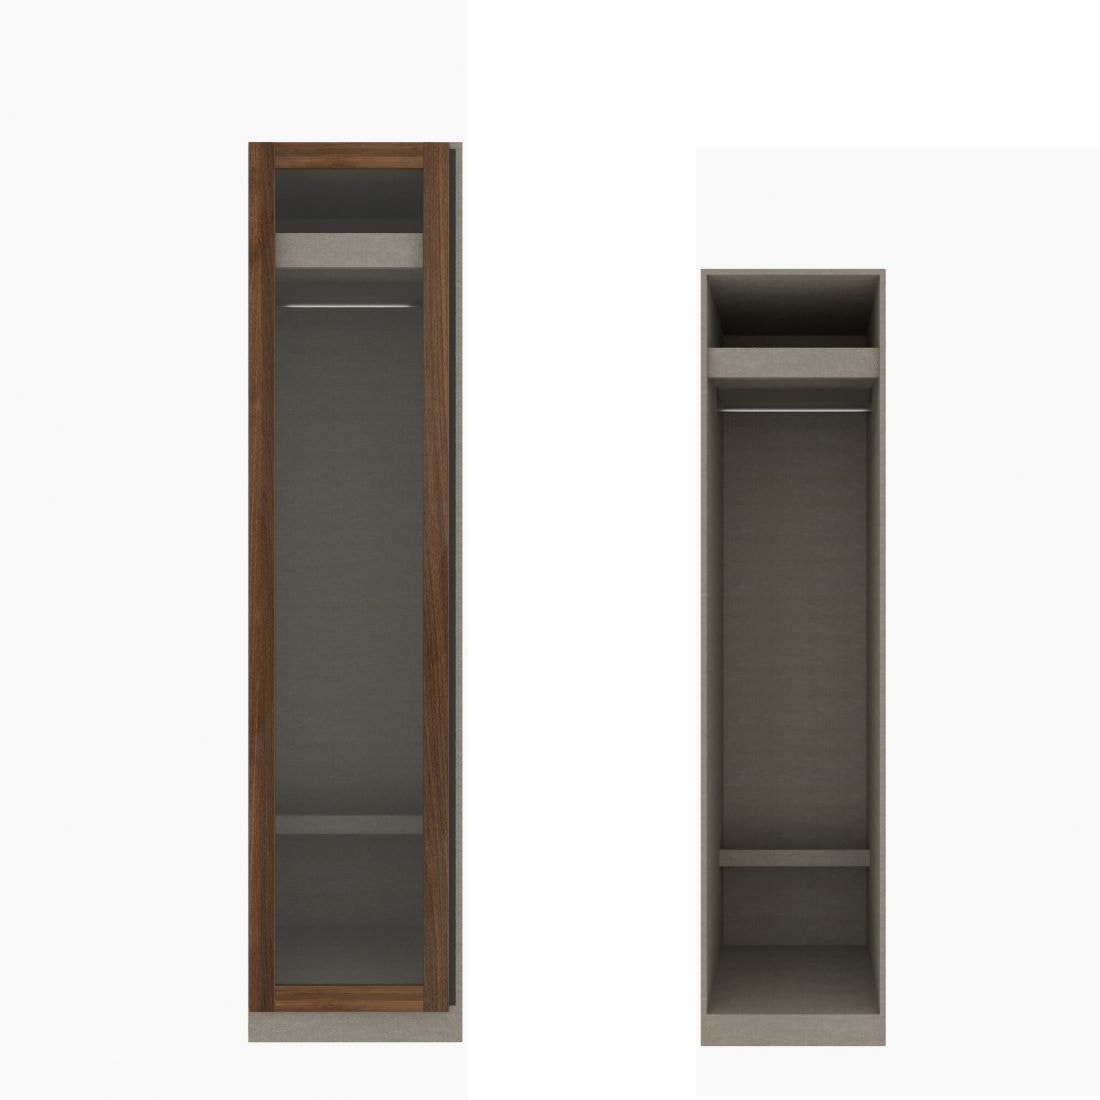 ตู้เสื้อผ้า ราวแขวนโล่ง OP-J (หน้าบานเปิดซ้าย) ขนาด 50 ซม. รุ่น Blox สีไม้เข้ม&กระจกใส01